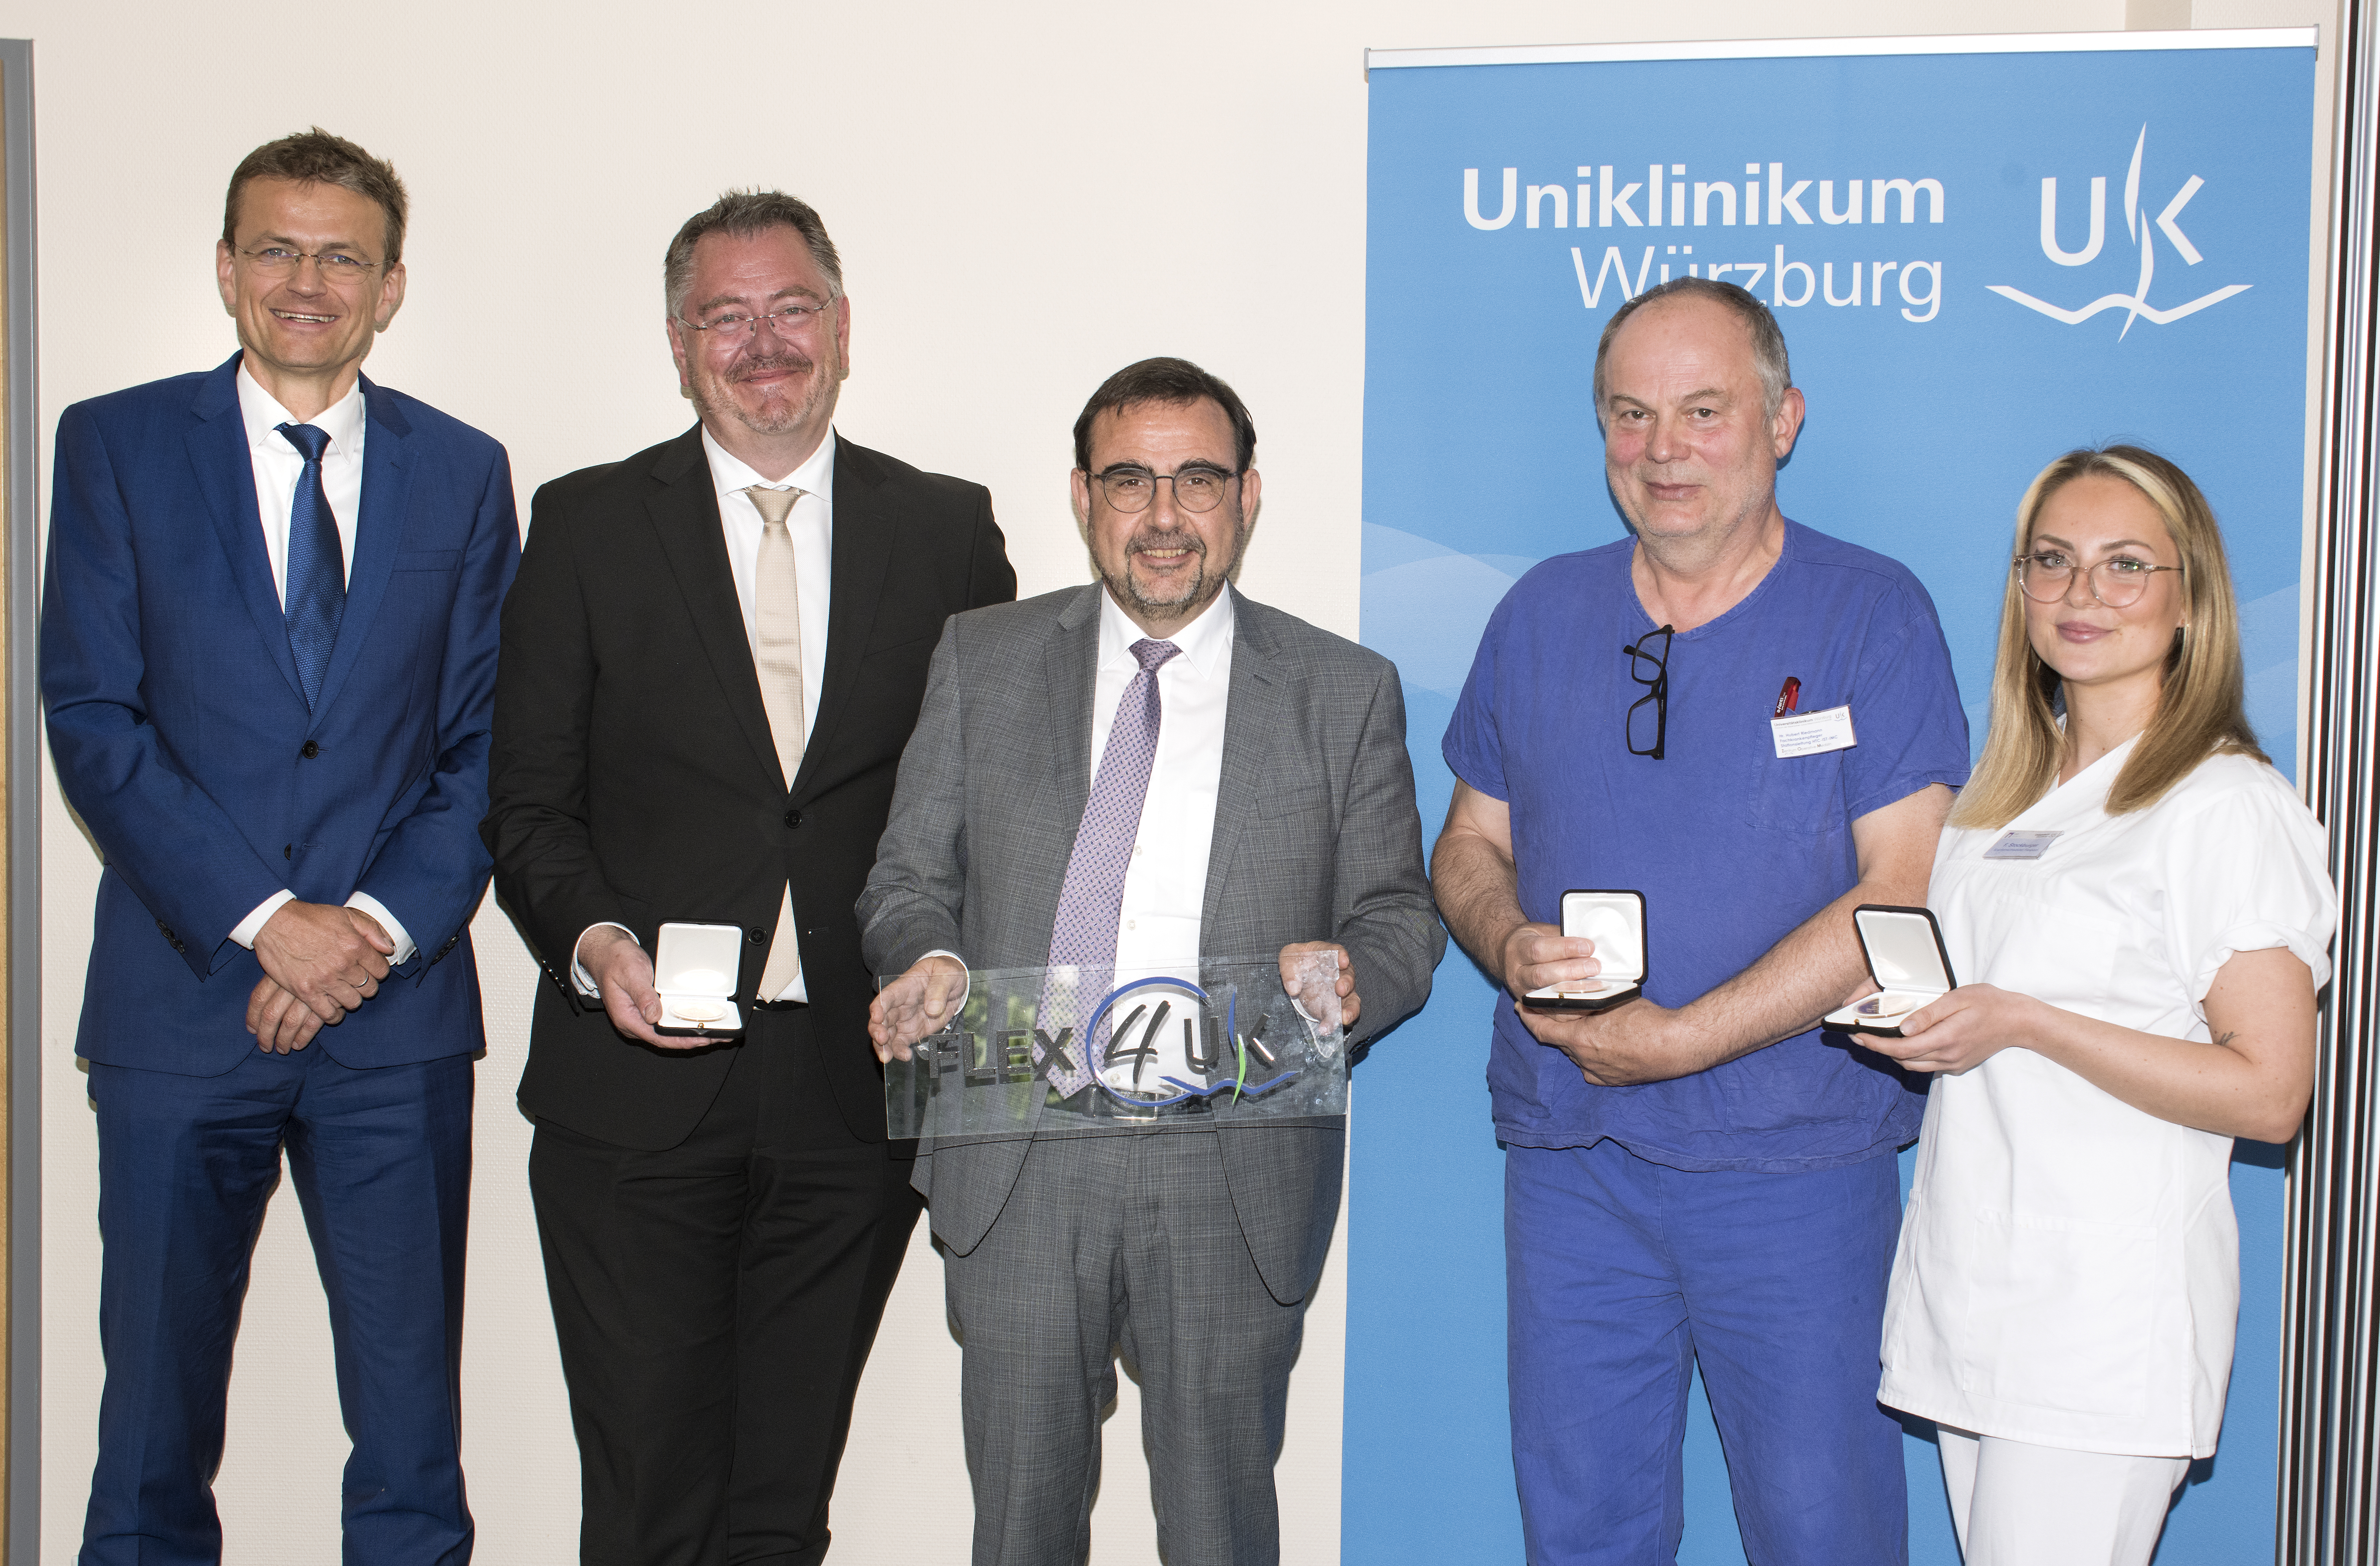 Bereits 160 Einstellungen konnten durch das Projekt „FLEX4UKW“ in der Pflege am Würzburger Uniklinikum realisiert werden. 